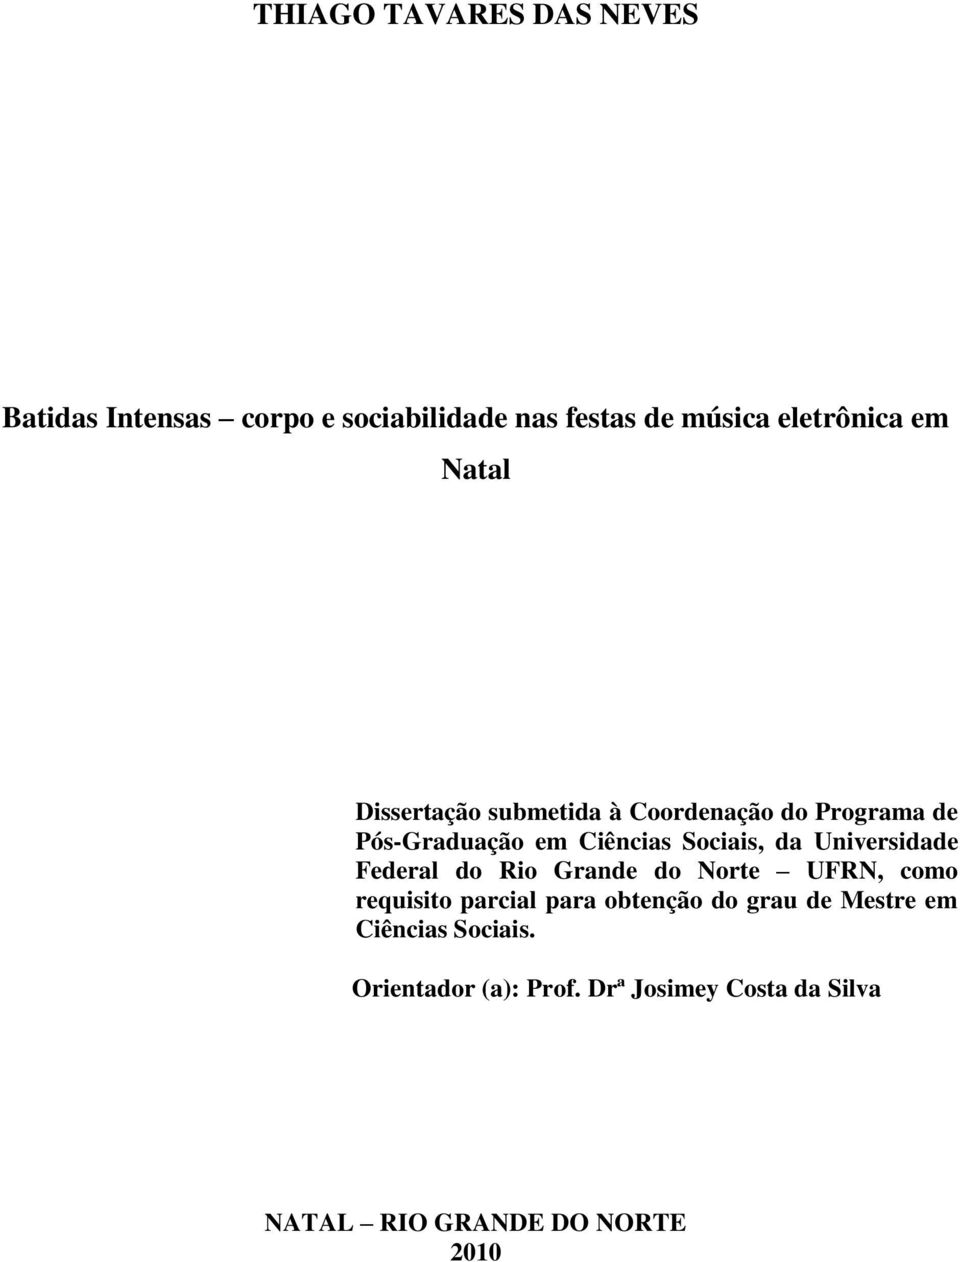 Universidade Federal do Rio Grande do Norte UFRN, como requisito parcial para obtenção do grau de